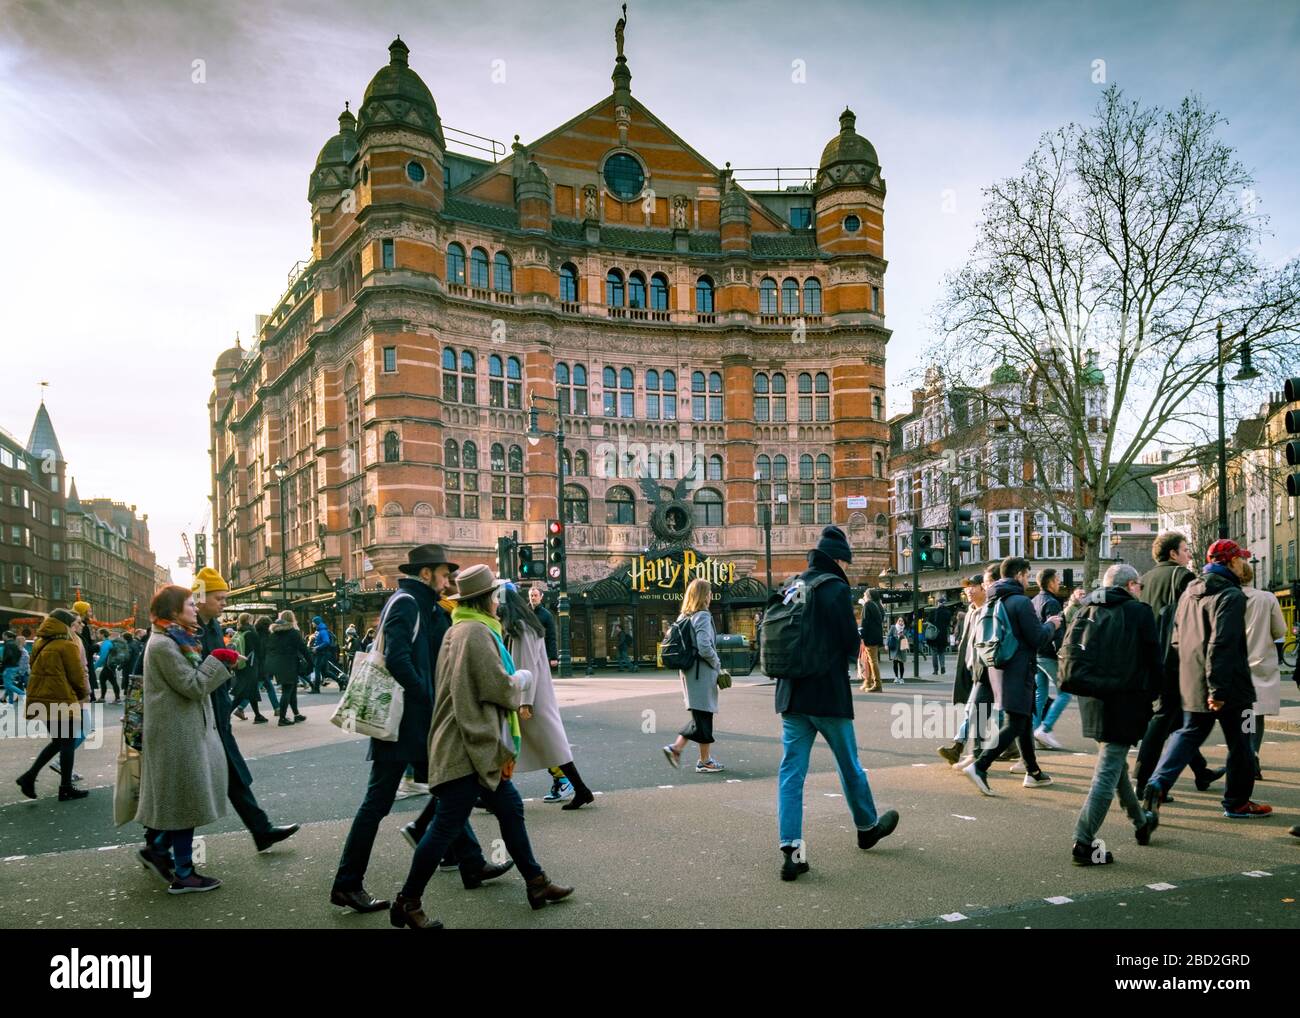 LONDRA - FEBBRAIO 2020: Folle di persone che camminano davanti al Palace Theatre nel West End di Londra con Harry Potter e il bambino maledetto Foto Stock